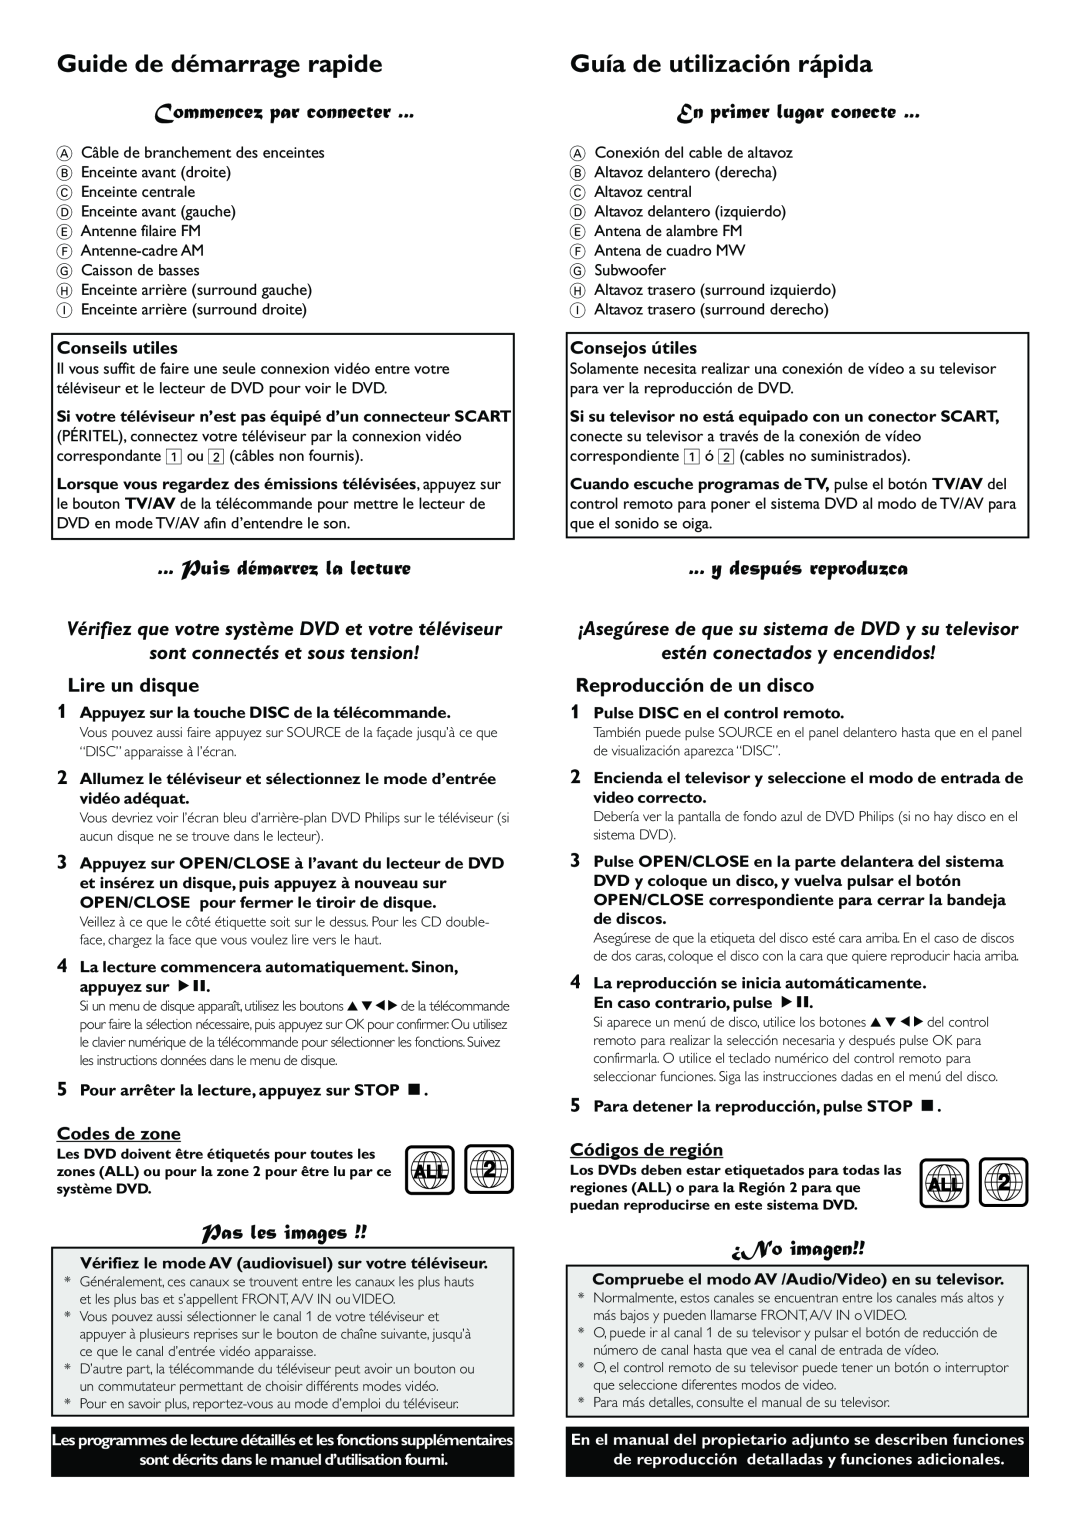 Philips LX7100SA Guide de démarrage rapide, Guía de utilización rápida, Commencez par connecter, Puis démarrez la lecture 